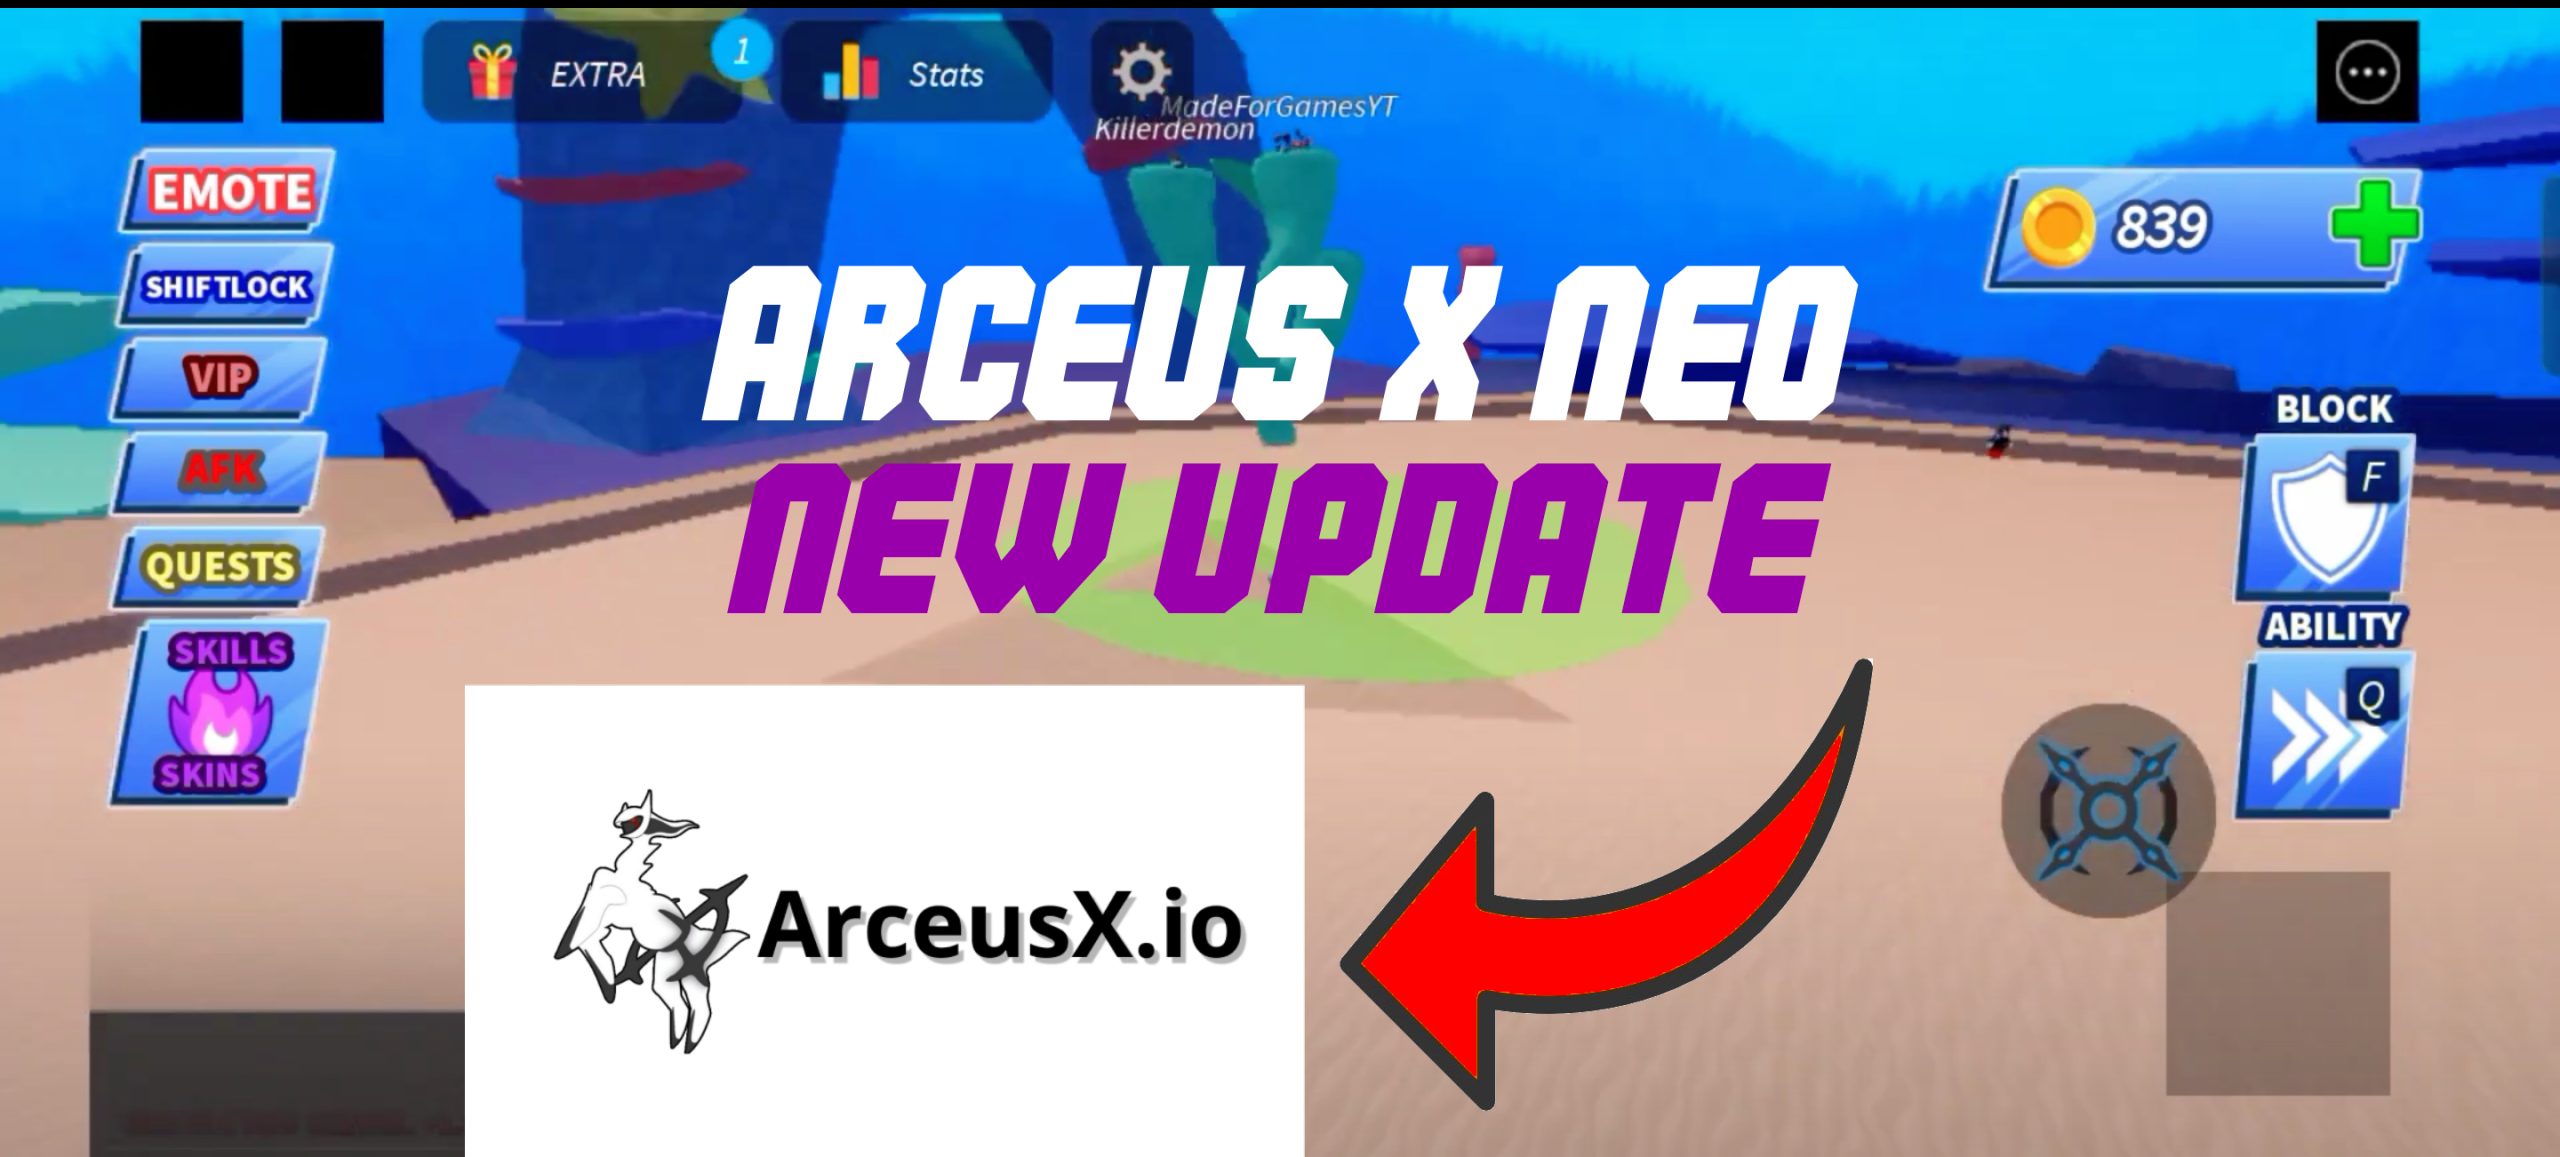 Arceus-X-NEO-ArceusX.io